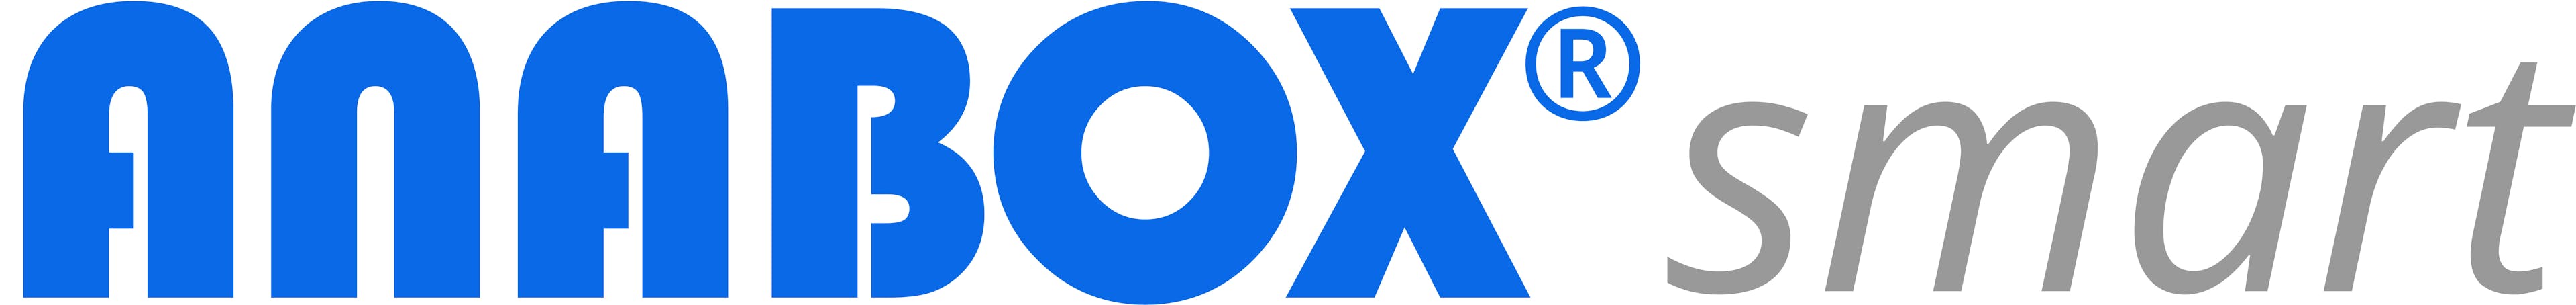 ANABOX smart logo sehr groß